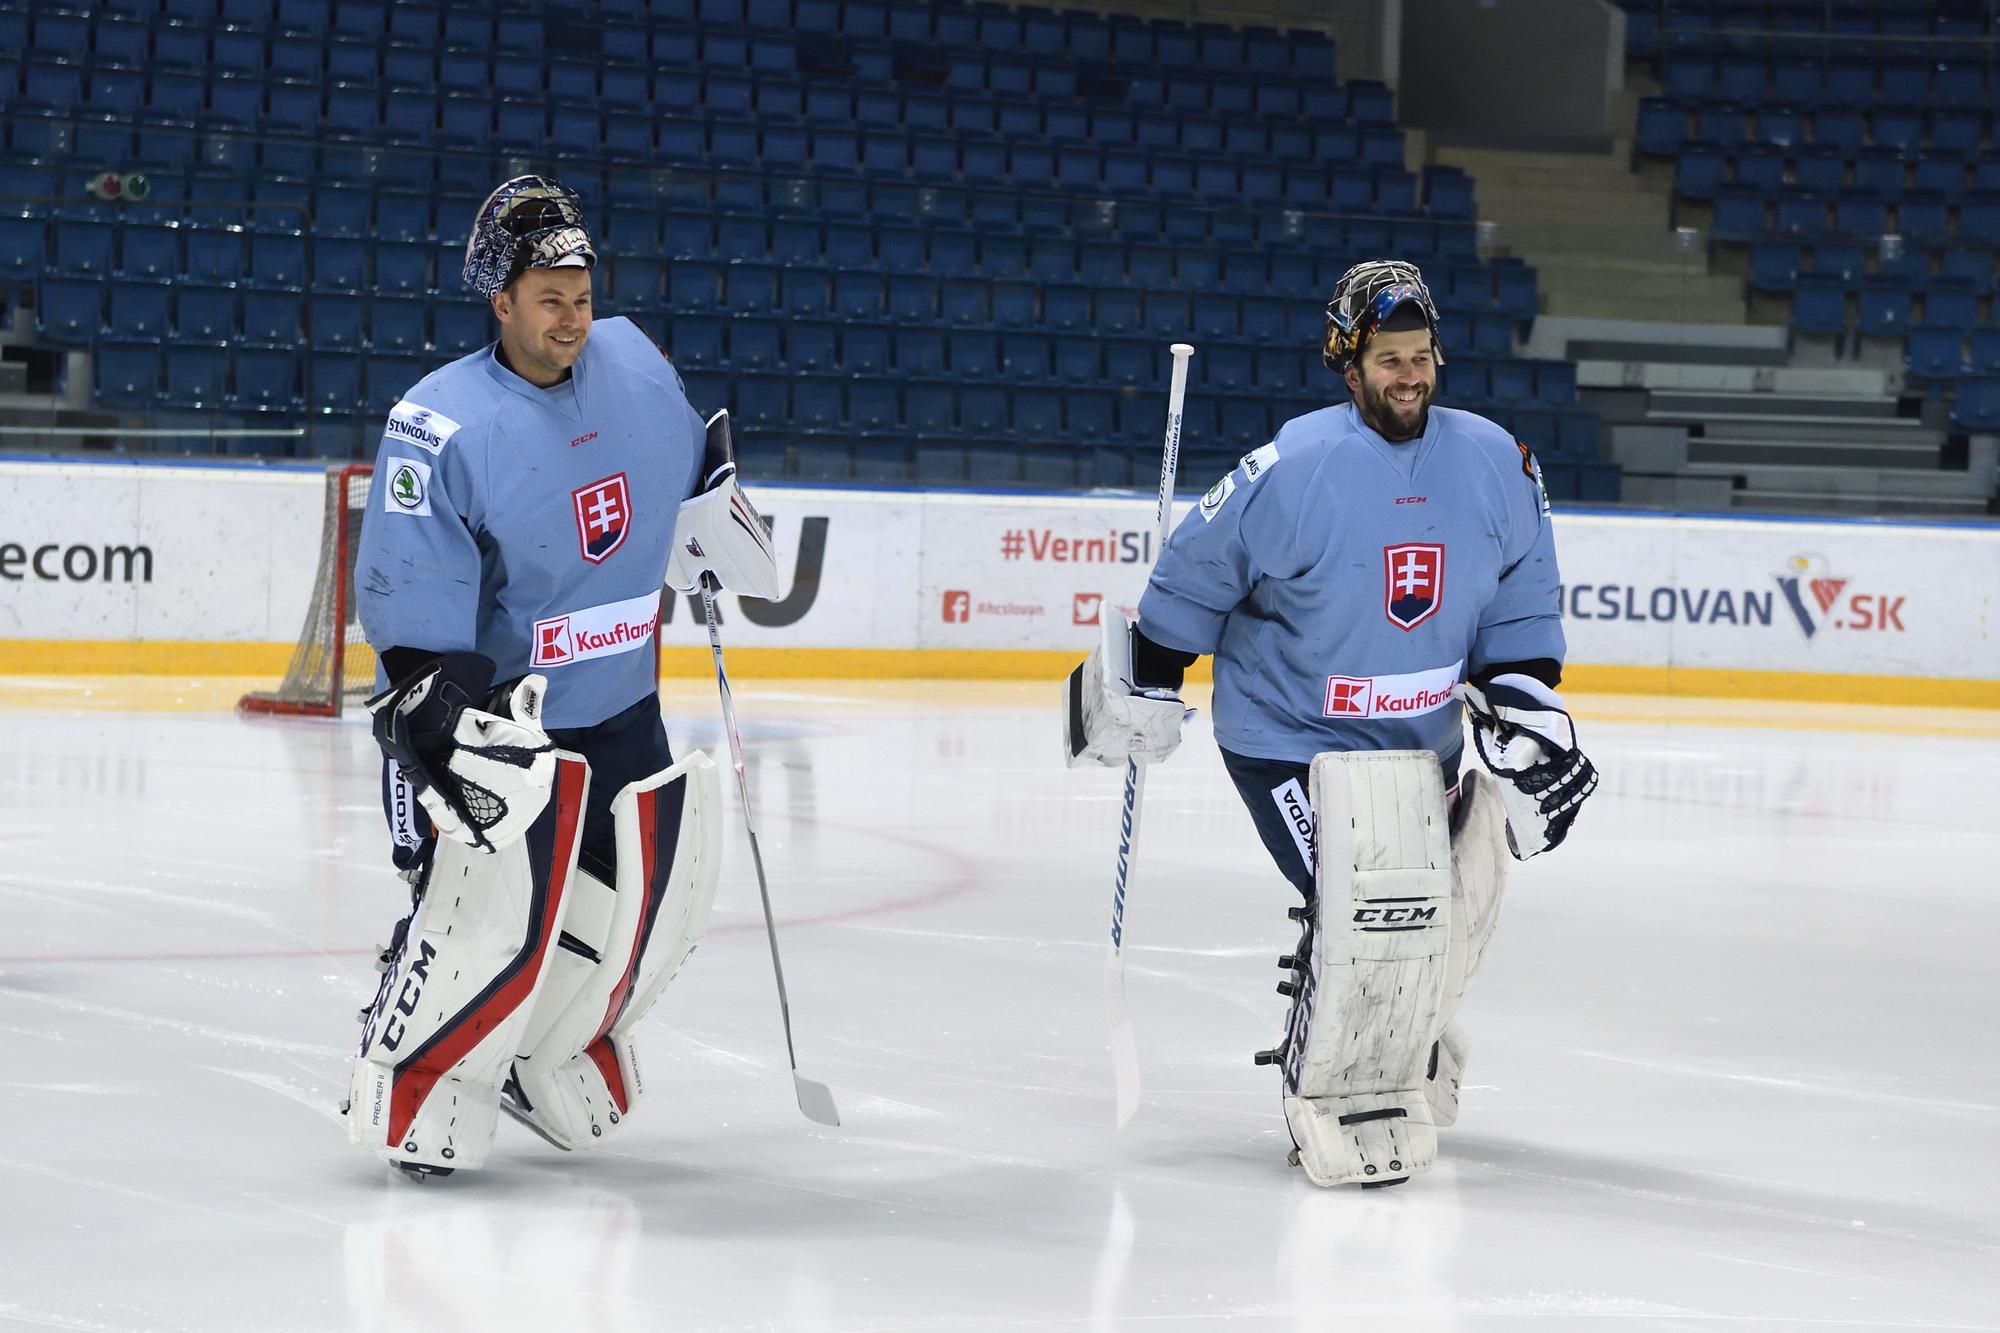 brankári slovenskej hokejovej reprezentácie Július Hudáček a Ján Laco počas tréningu